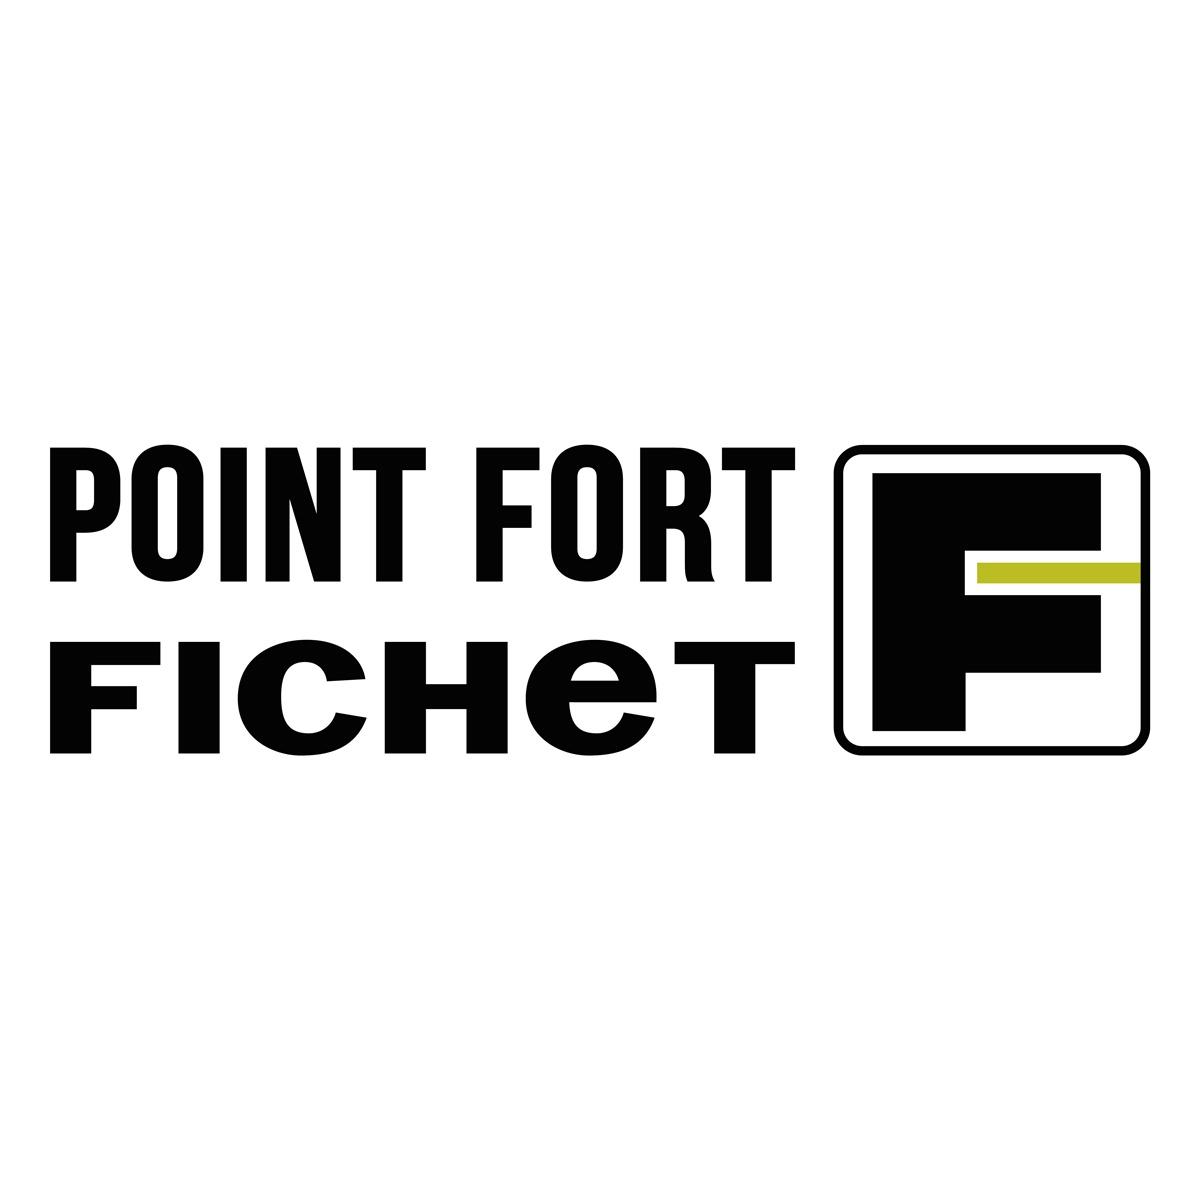 Bs Pointcoffre - Point Fort Fichet  Neuilly Sur Seine